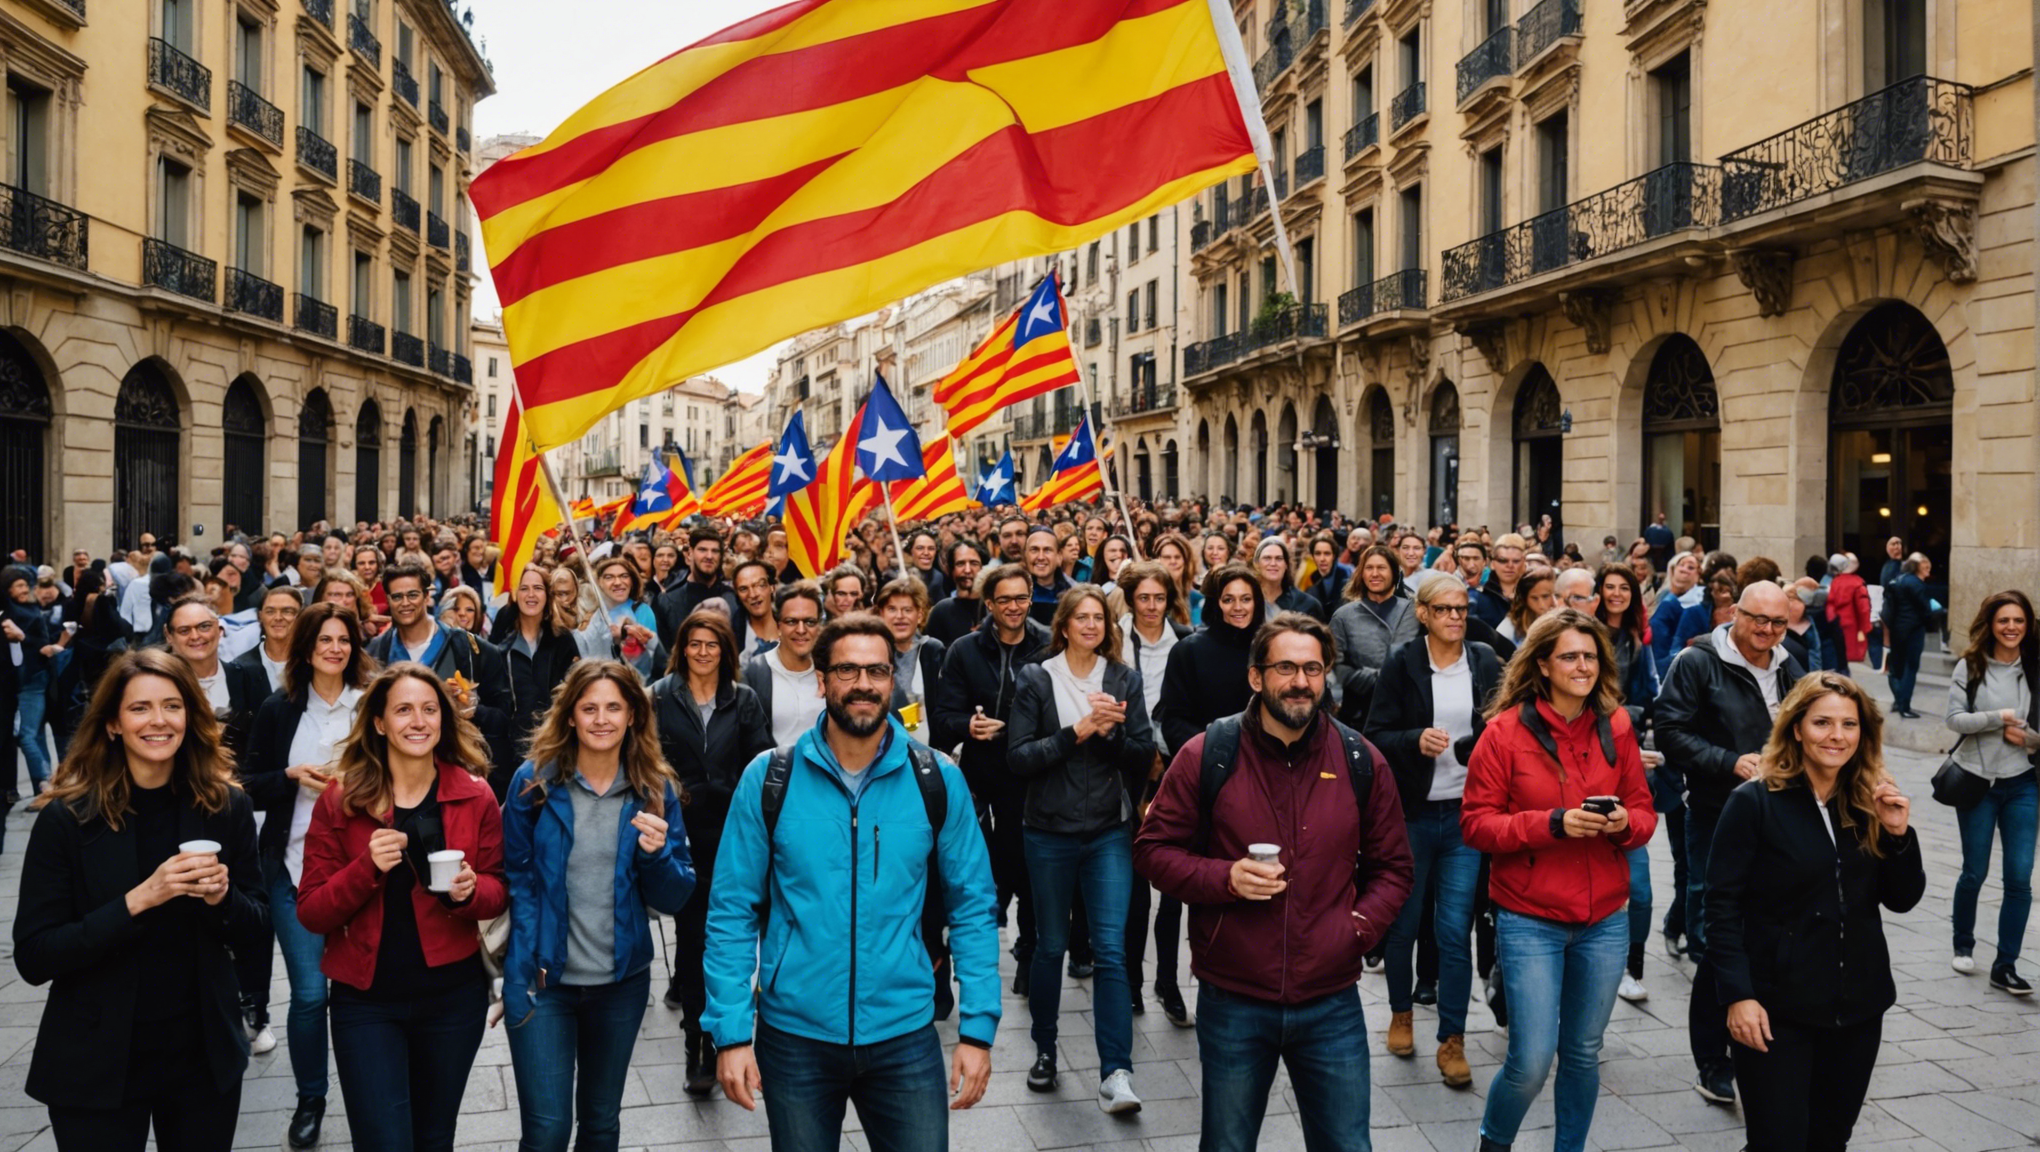 découvrez les étapes nécessaires pour atteindre le niveau c de catalan en autonomie à travers ce guide pratique.